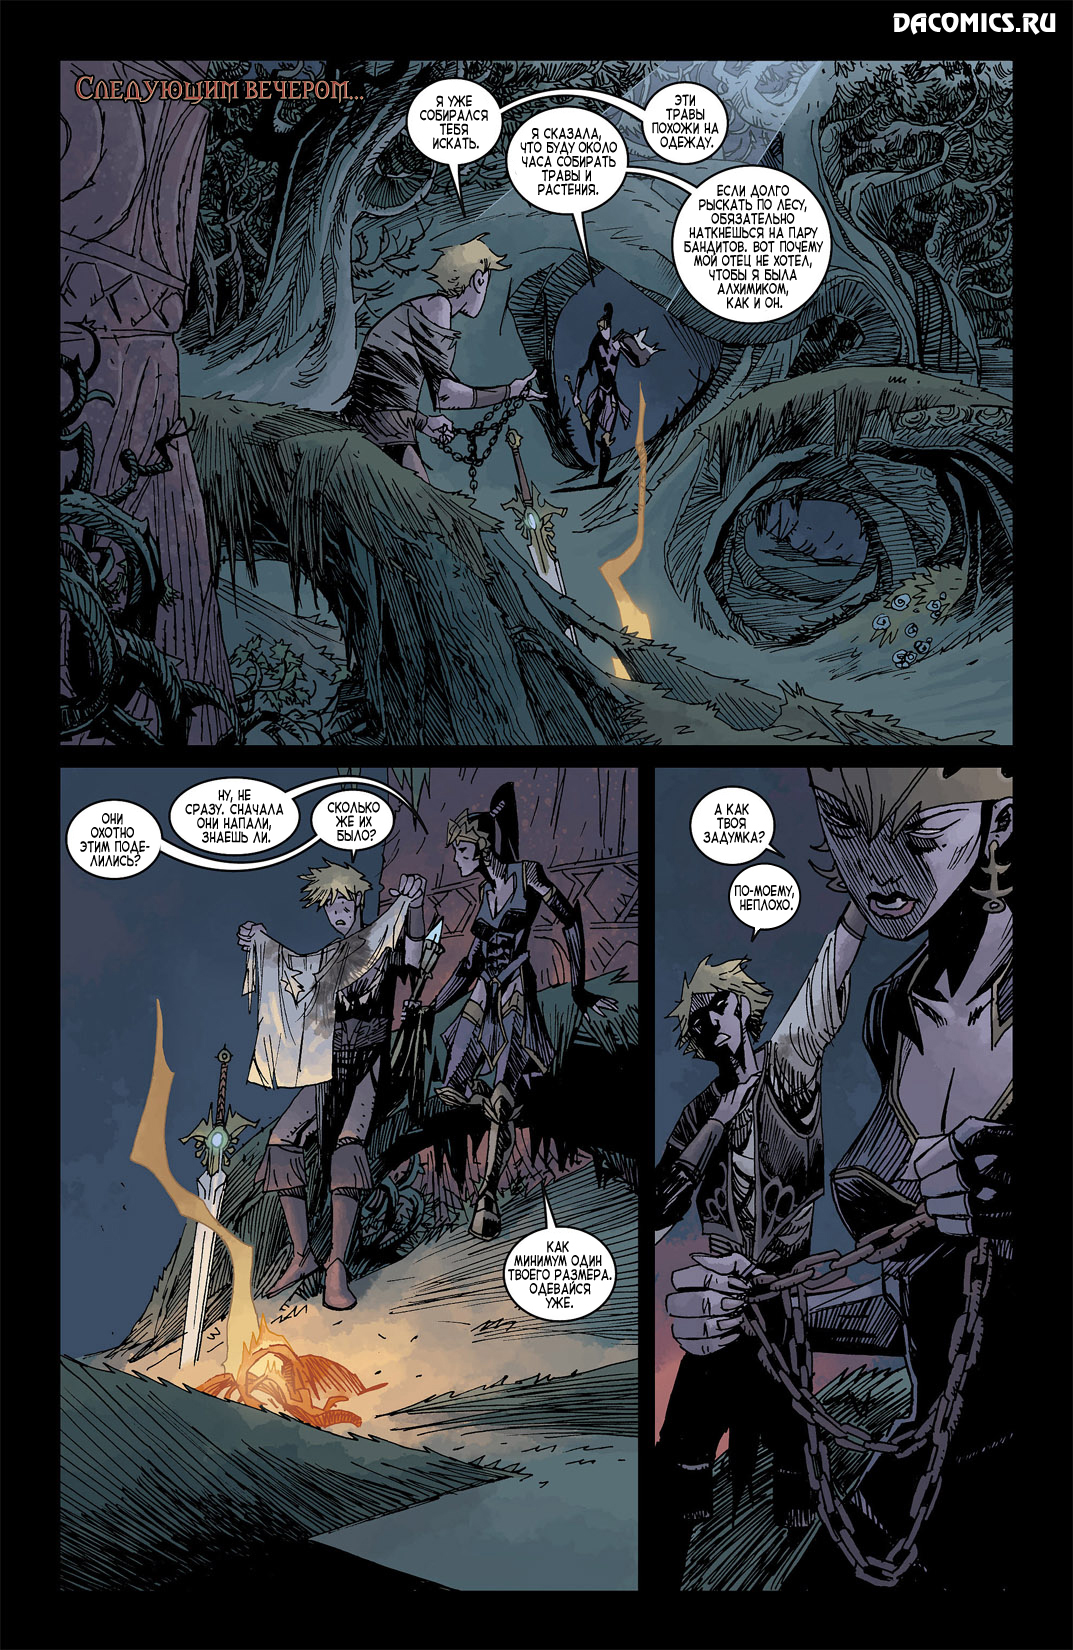 Бэтмен меч правосудия. 2 Мечей справедливость. Diablo 3 Comics.